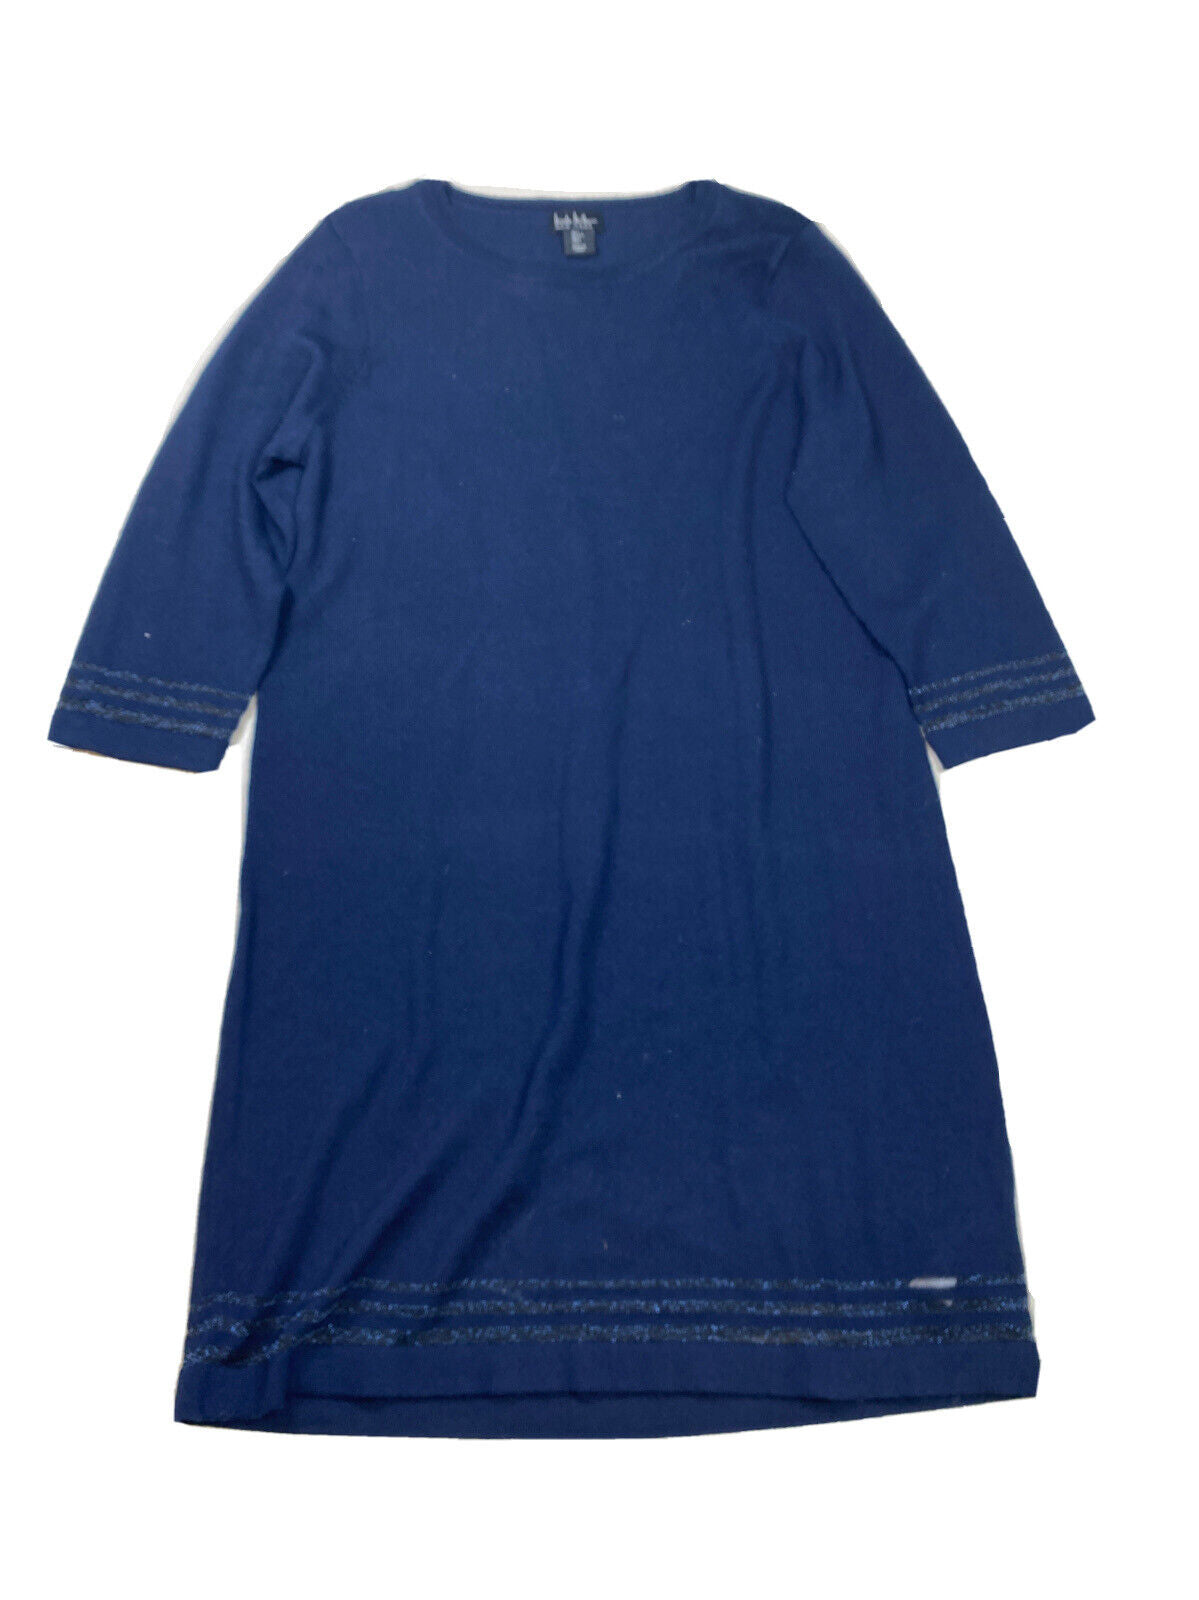 NEW Nicole Miller Women's Blue Sheer Knit 3/4 Sleeve Sweater Dress - L